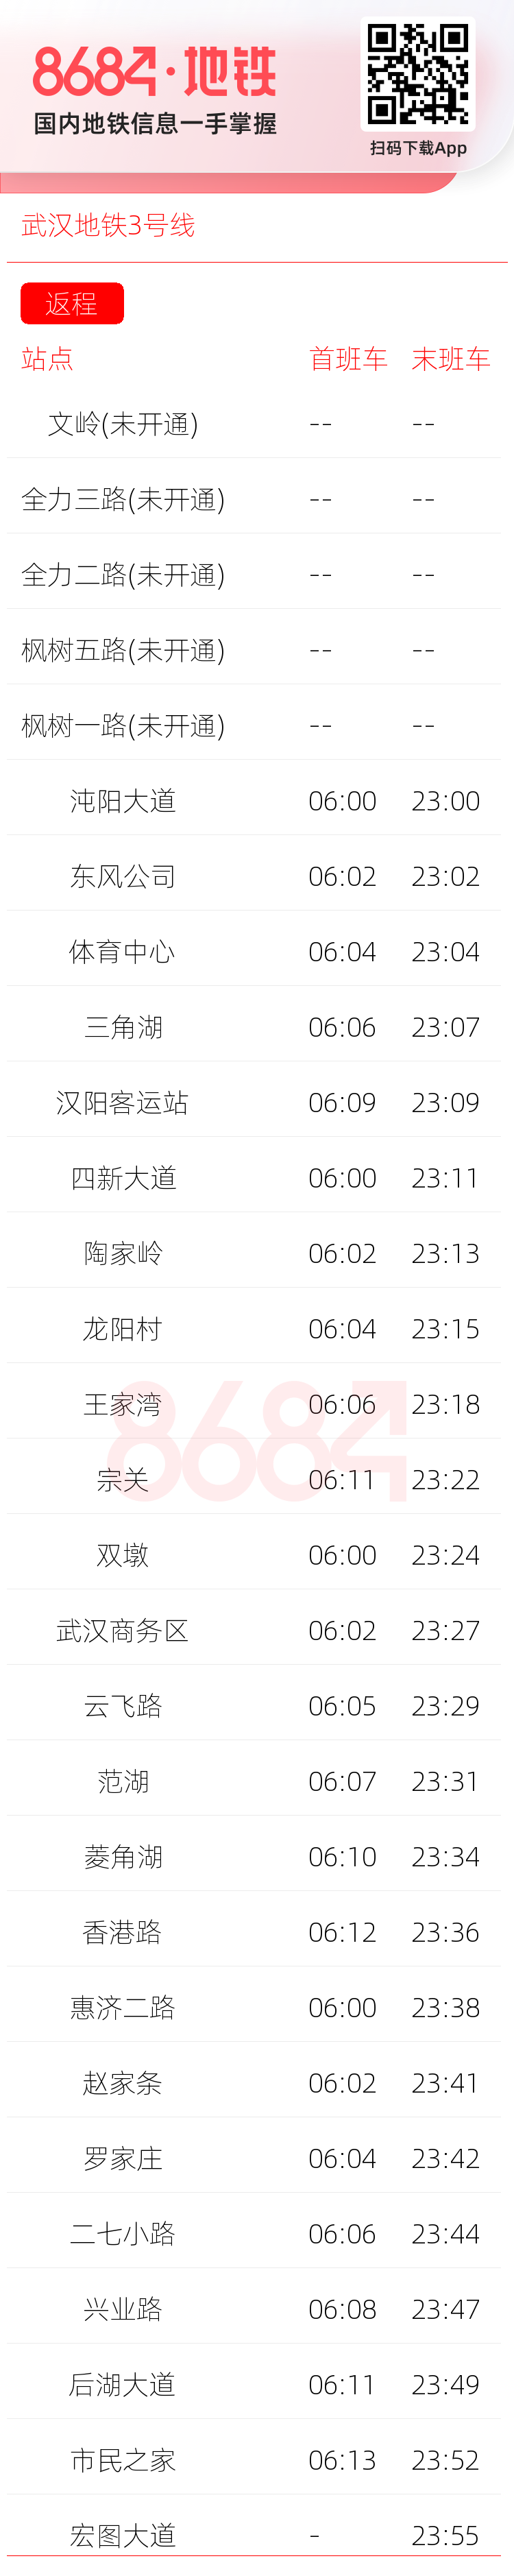 武汉地铁3号线运营时间表